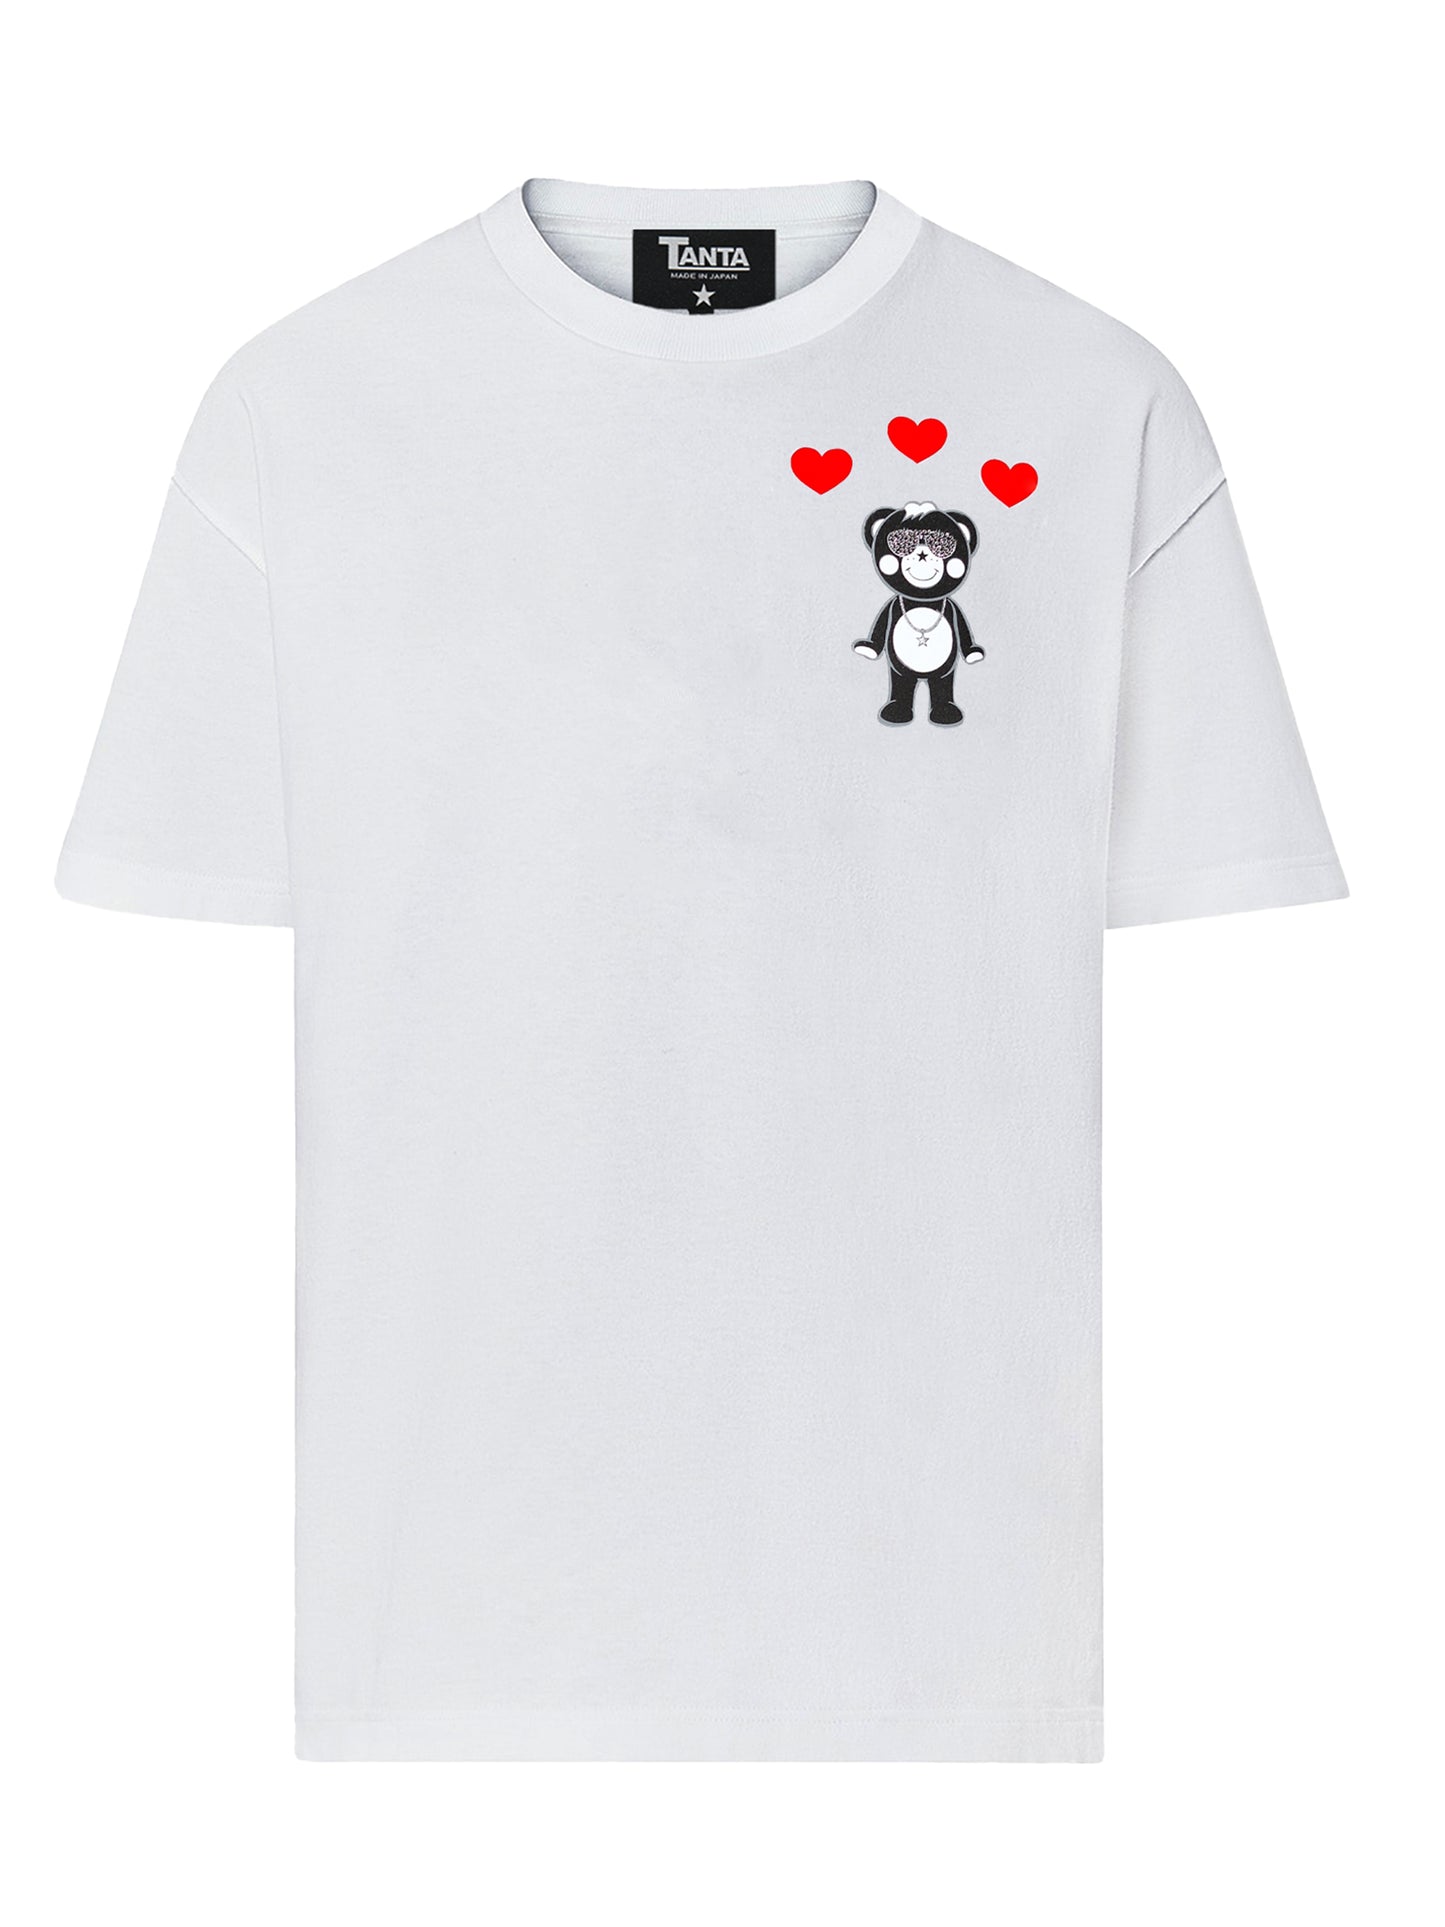 Love x 3 Lil Chappy T-shirt